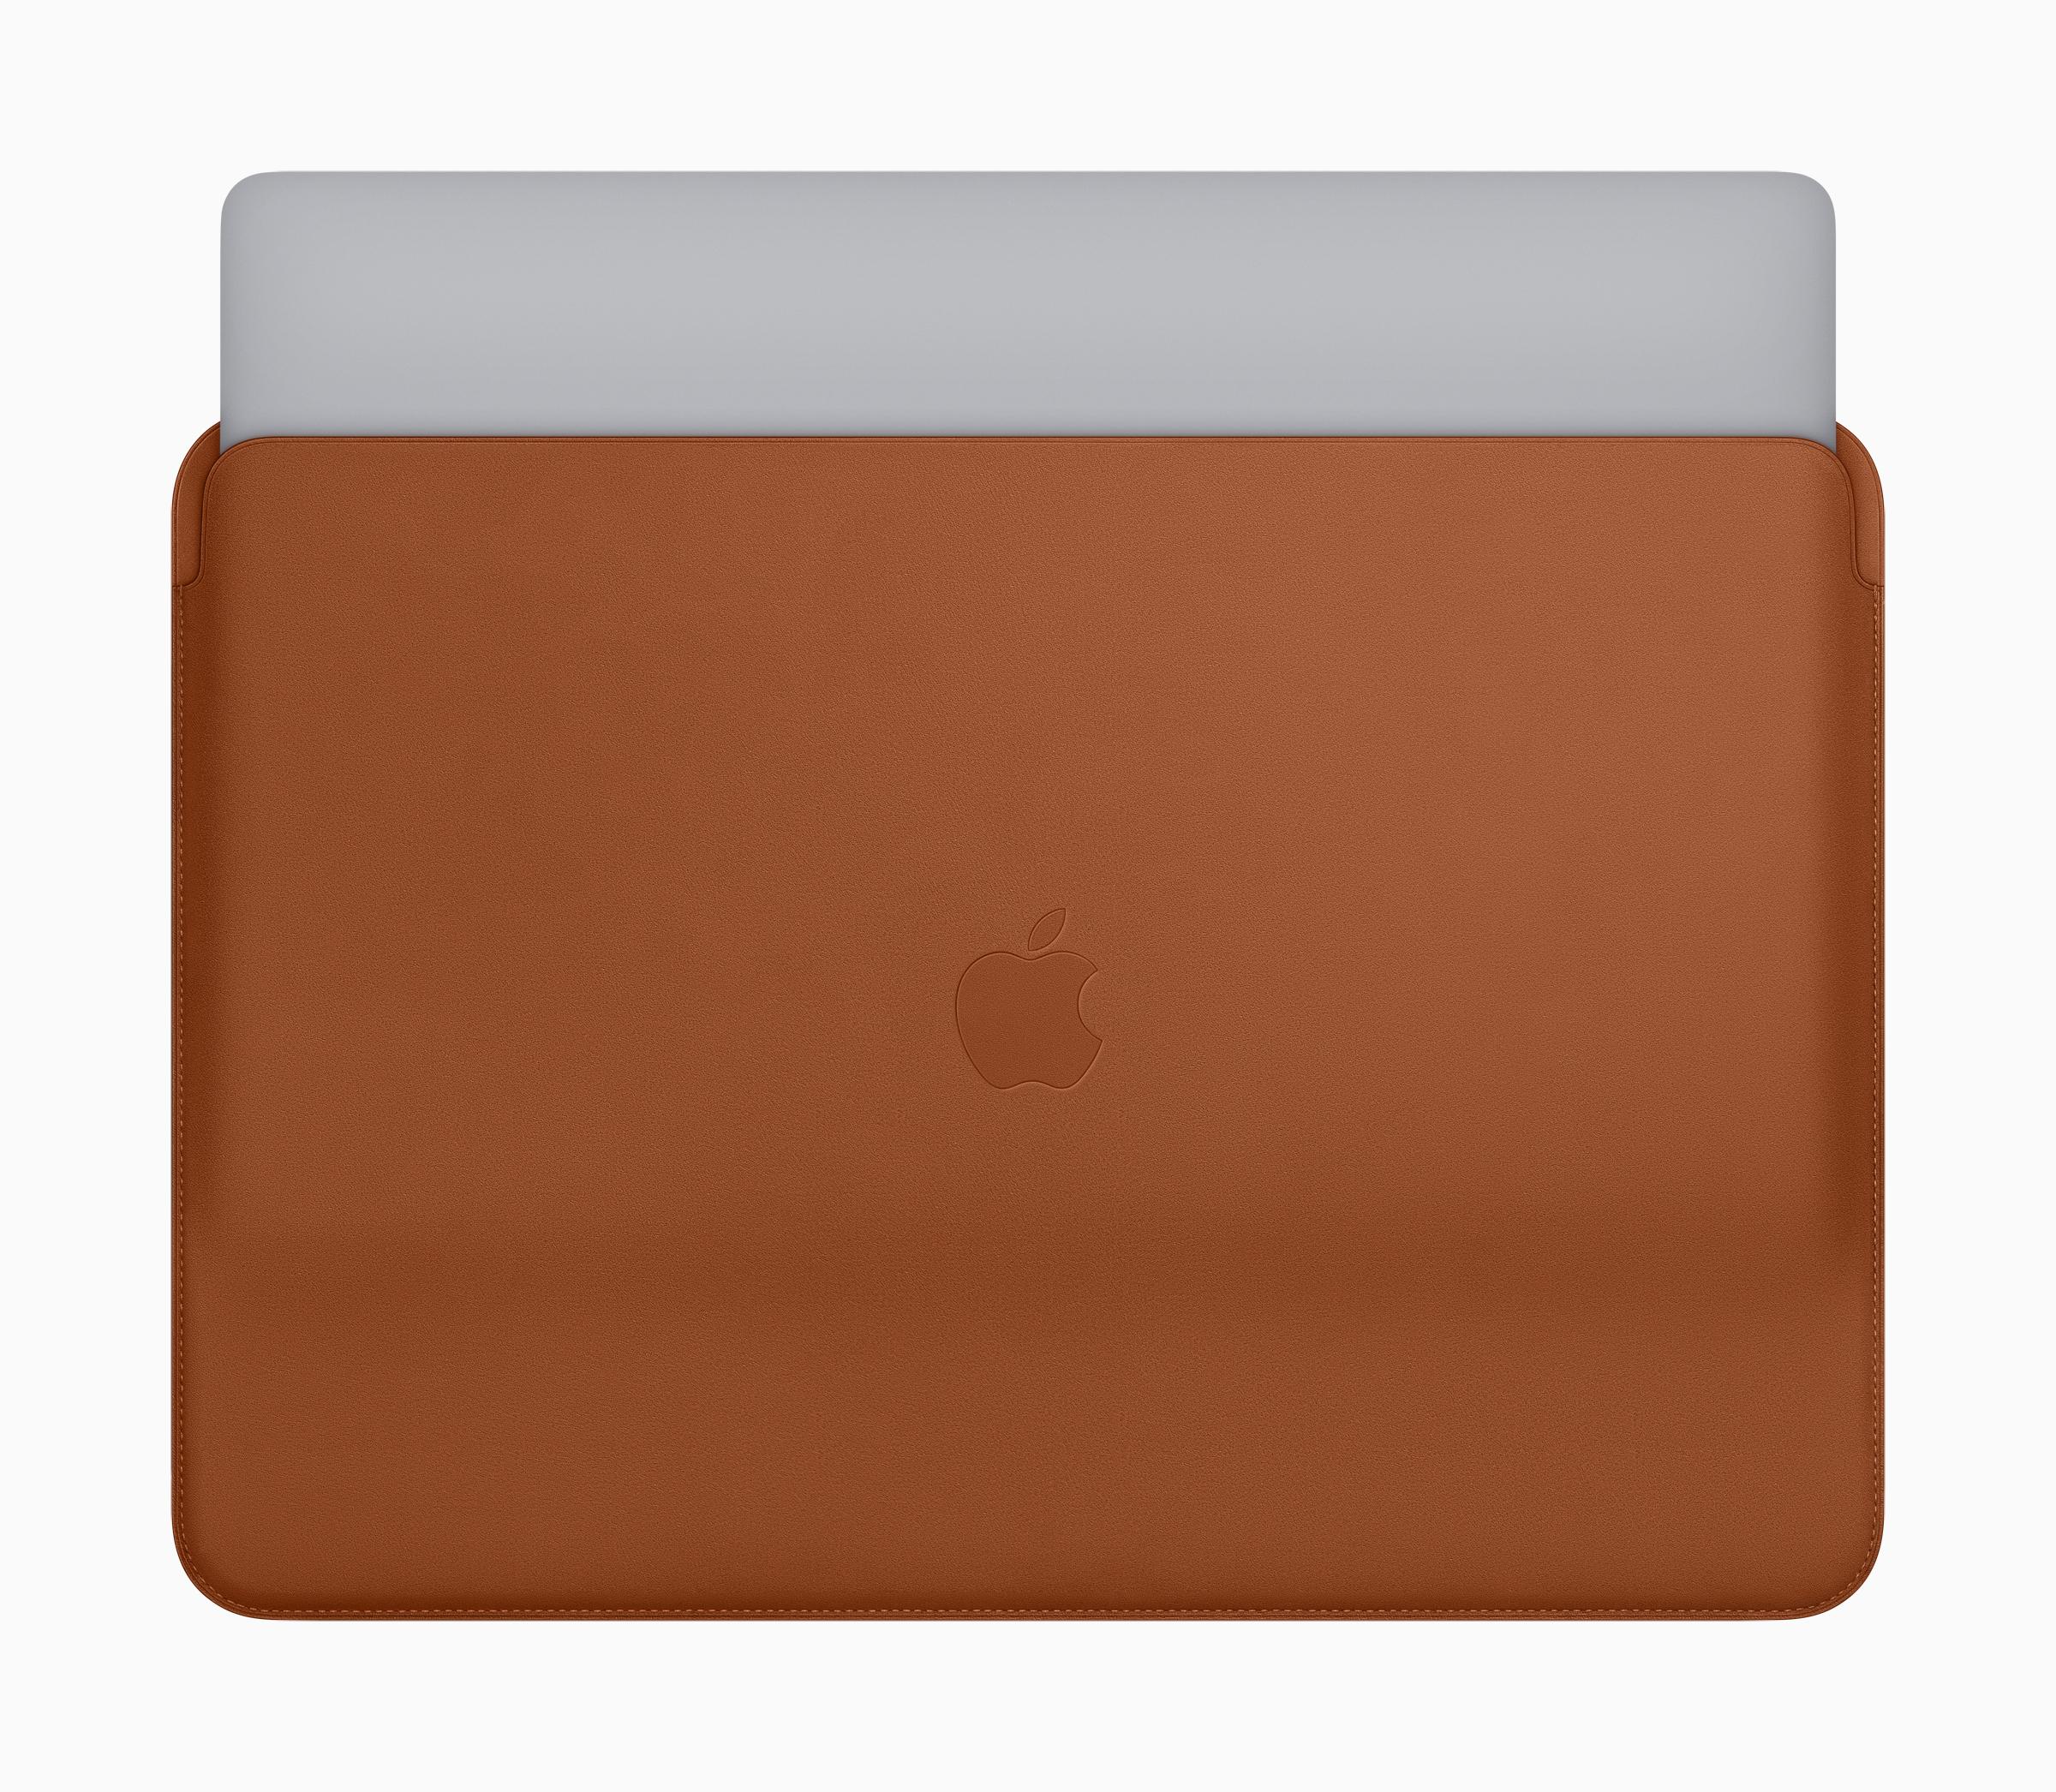 MacBook Pro新型登場、最強仕様は73万1800円に —— Pro用のレザー